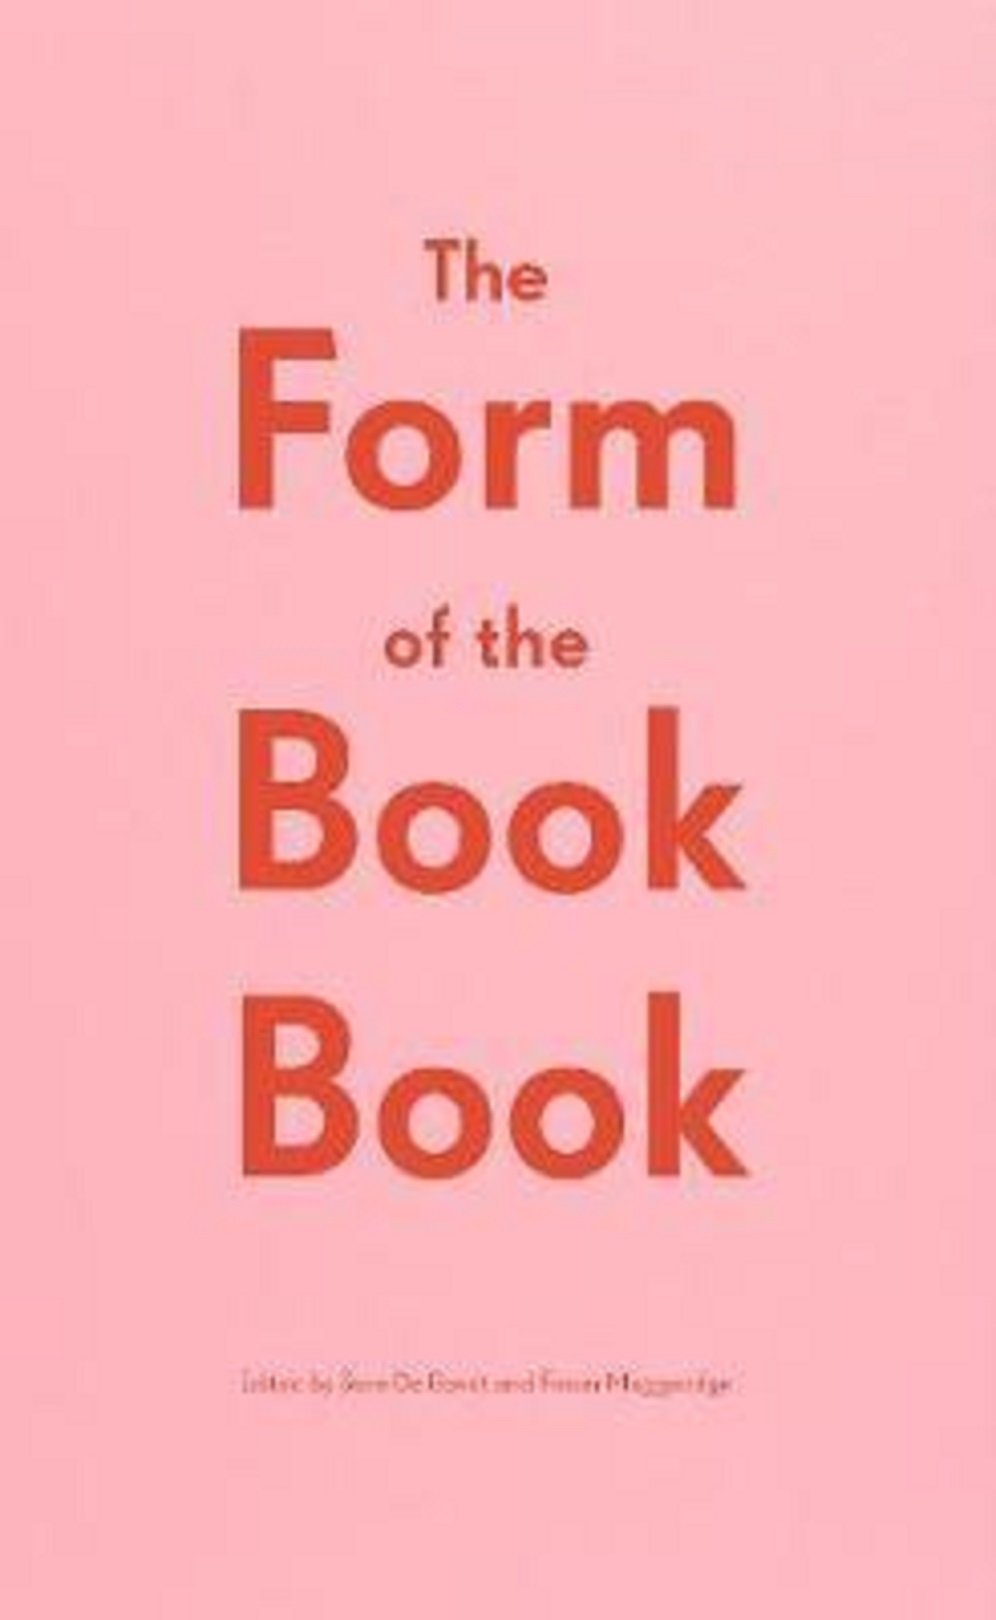 The Form of the Book Book | Catherine de Smet, James Goggin, Jenny Eneqvist